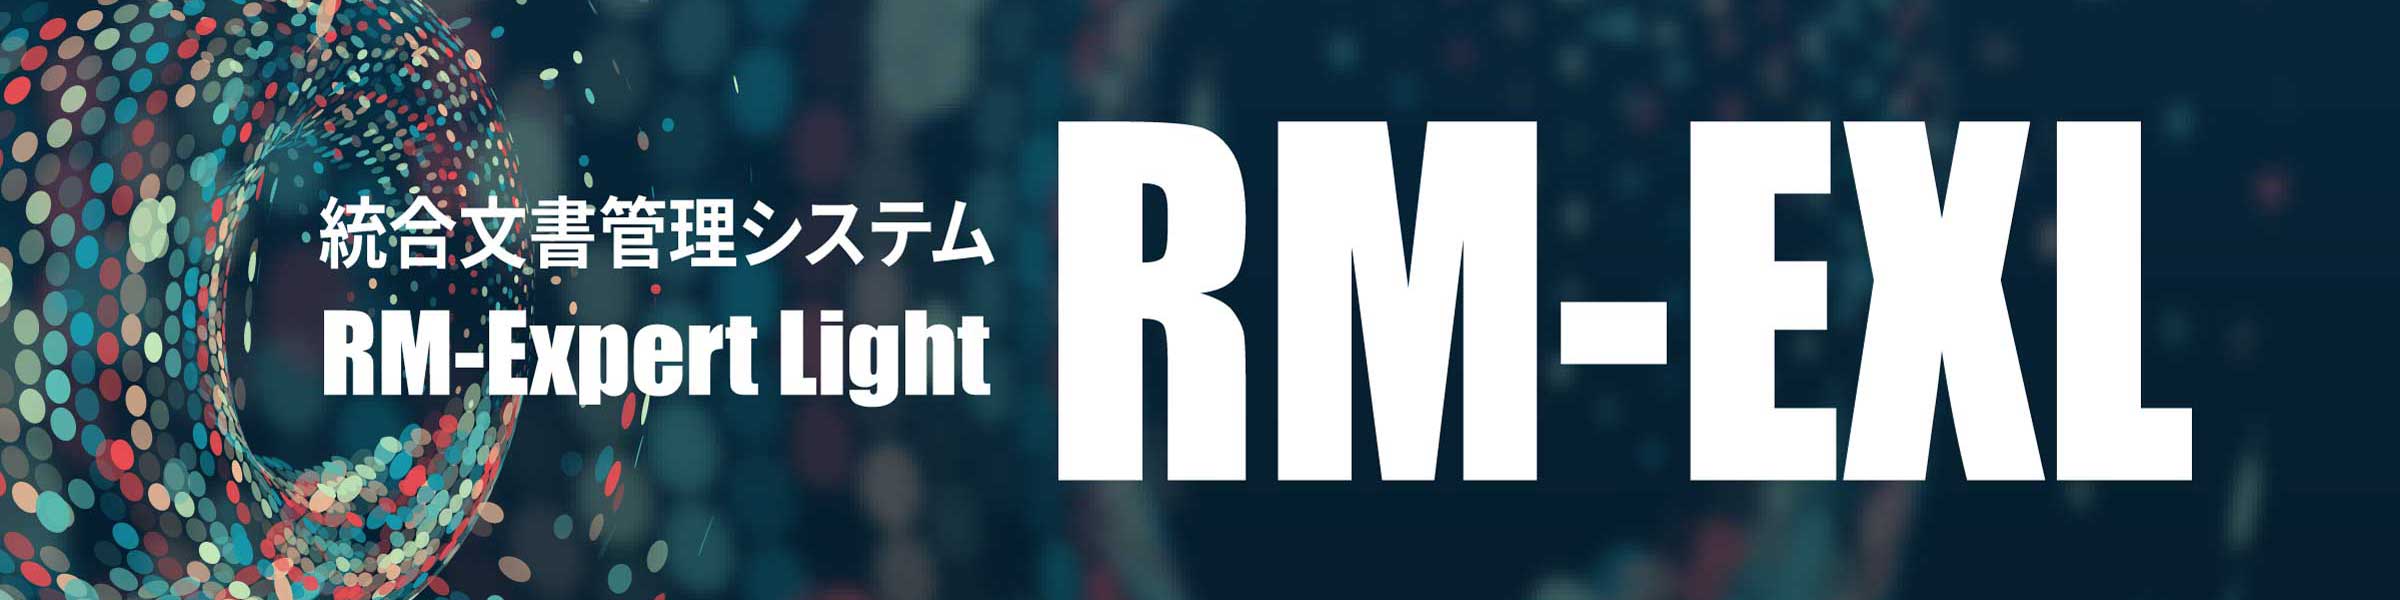 RM-Expert Light